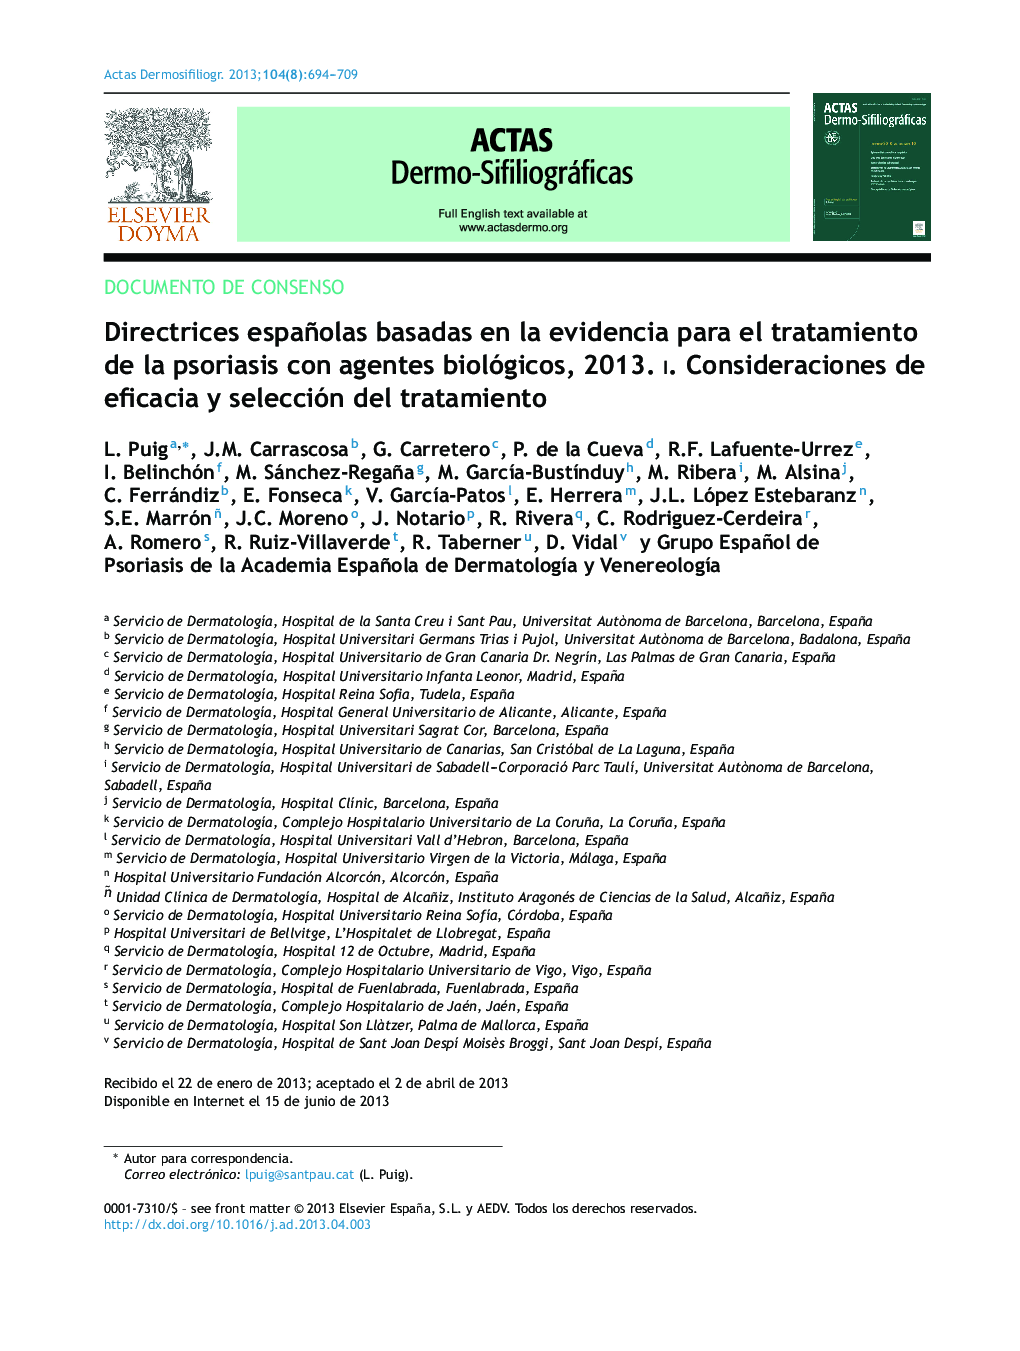 Directrices españolas basadas en la evidencia para el tratamiento de la psoriasis con agentes biológicos, 2013. I. Consideraciones de eficacia y selección del tratamiento